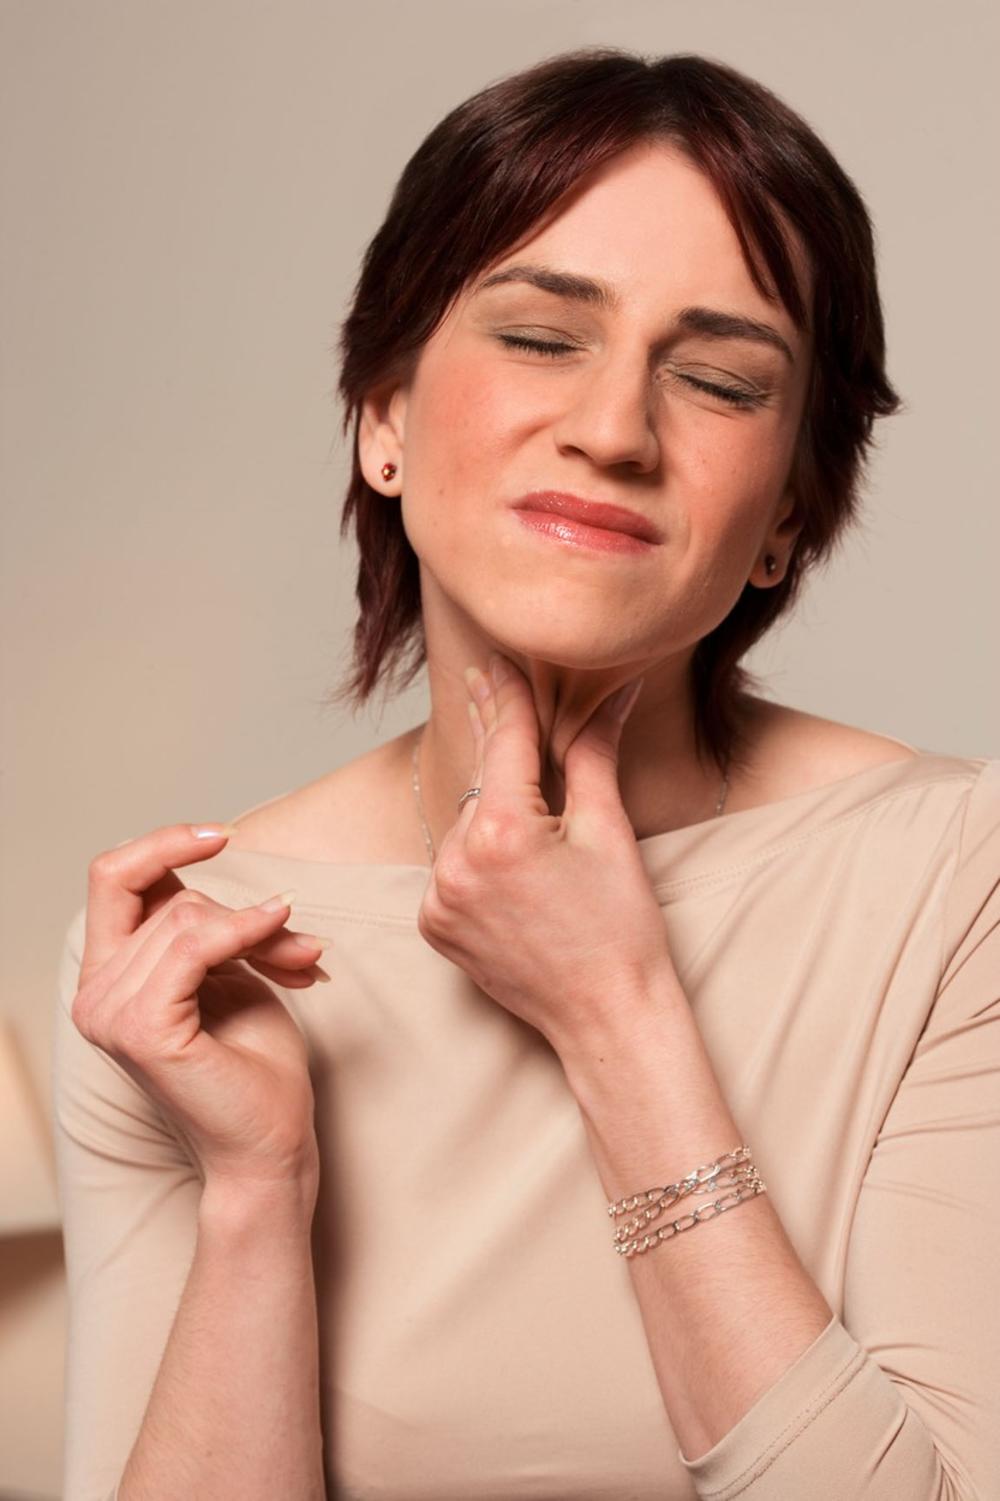 Ako bol nije povezana sa prehladom ili gripom već je uporna i jaka, ona može upućivati na puno ozbiljnije stanje, poput raka grla ili grkljana  